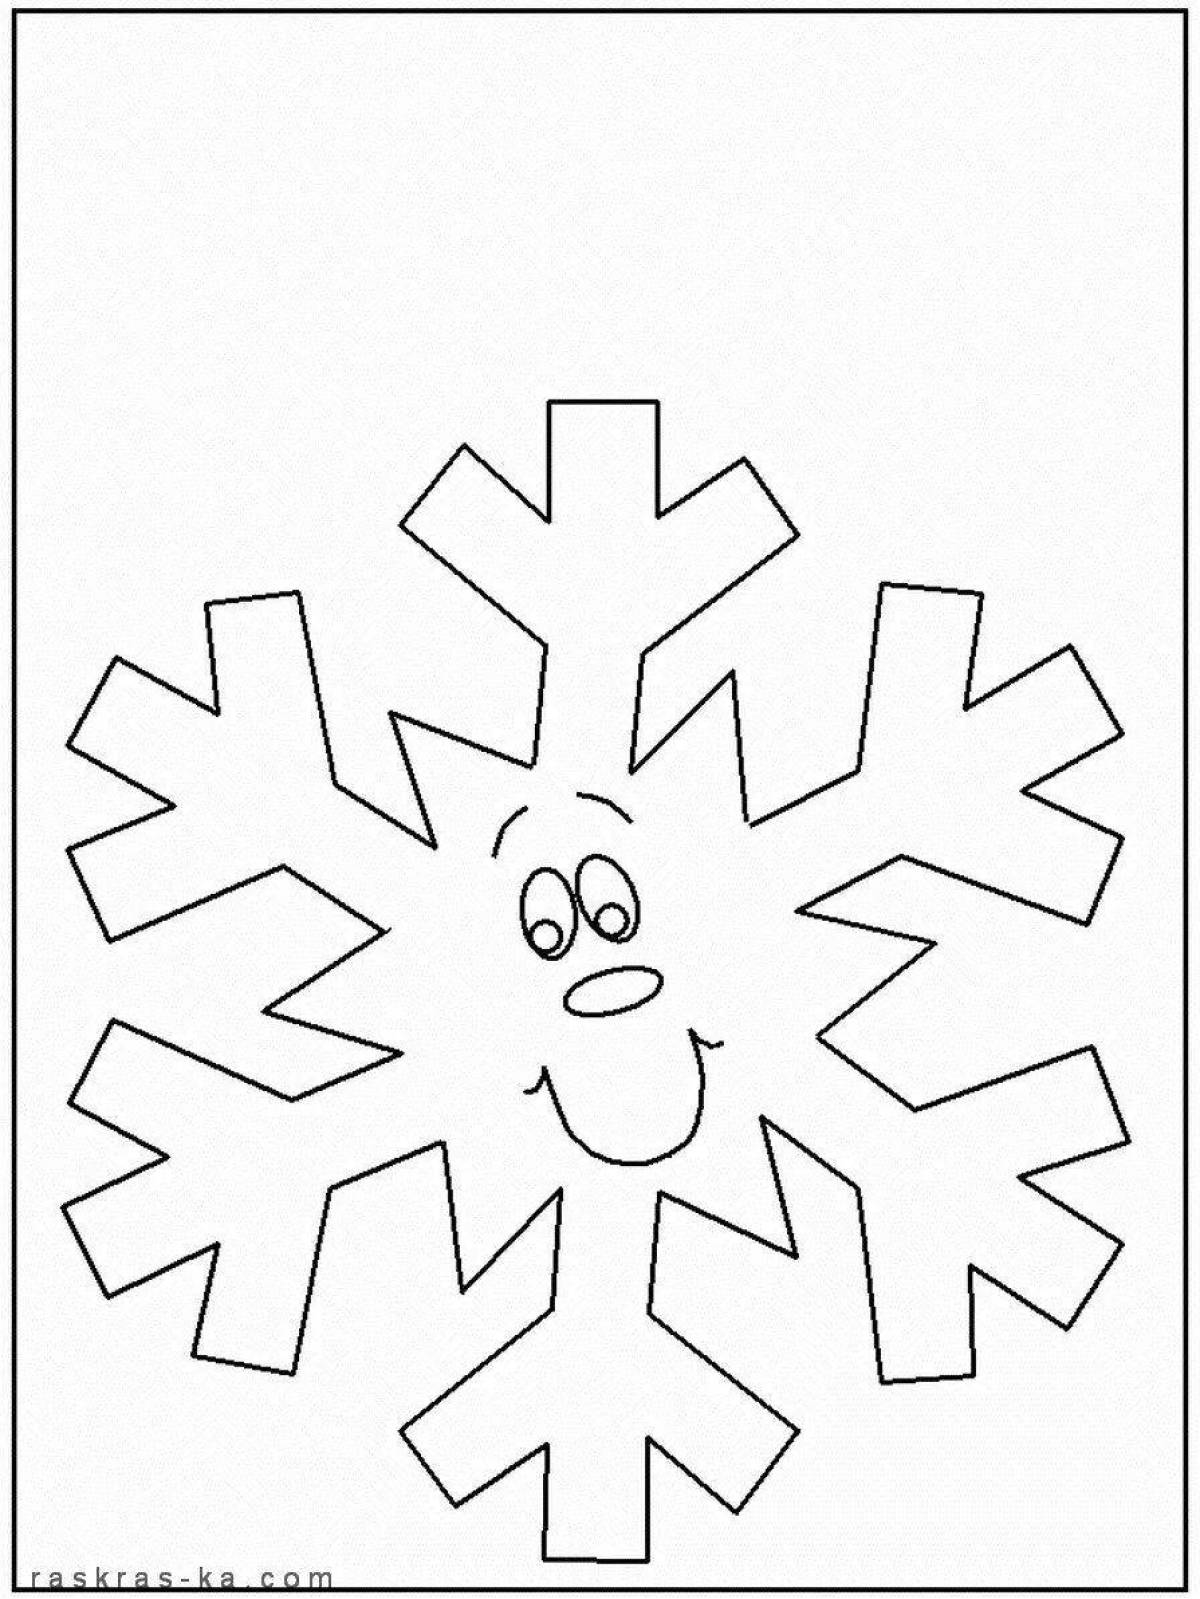 Волшебная раскраска снежинка для детей 3-4 лет